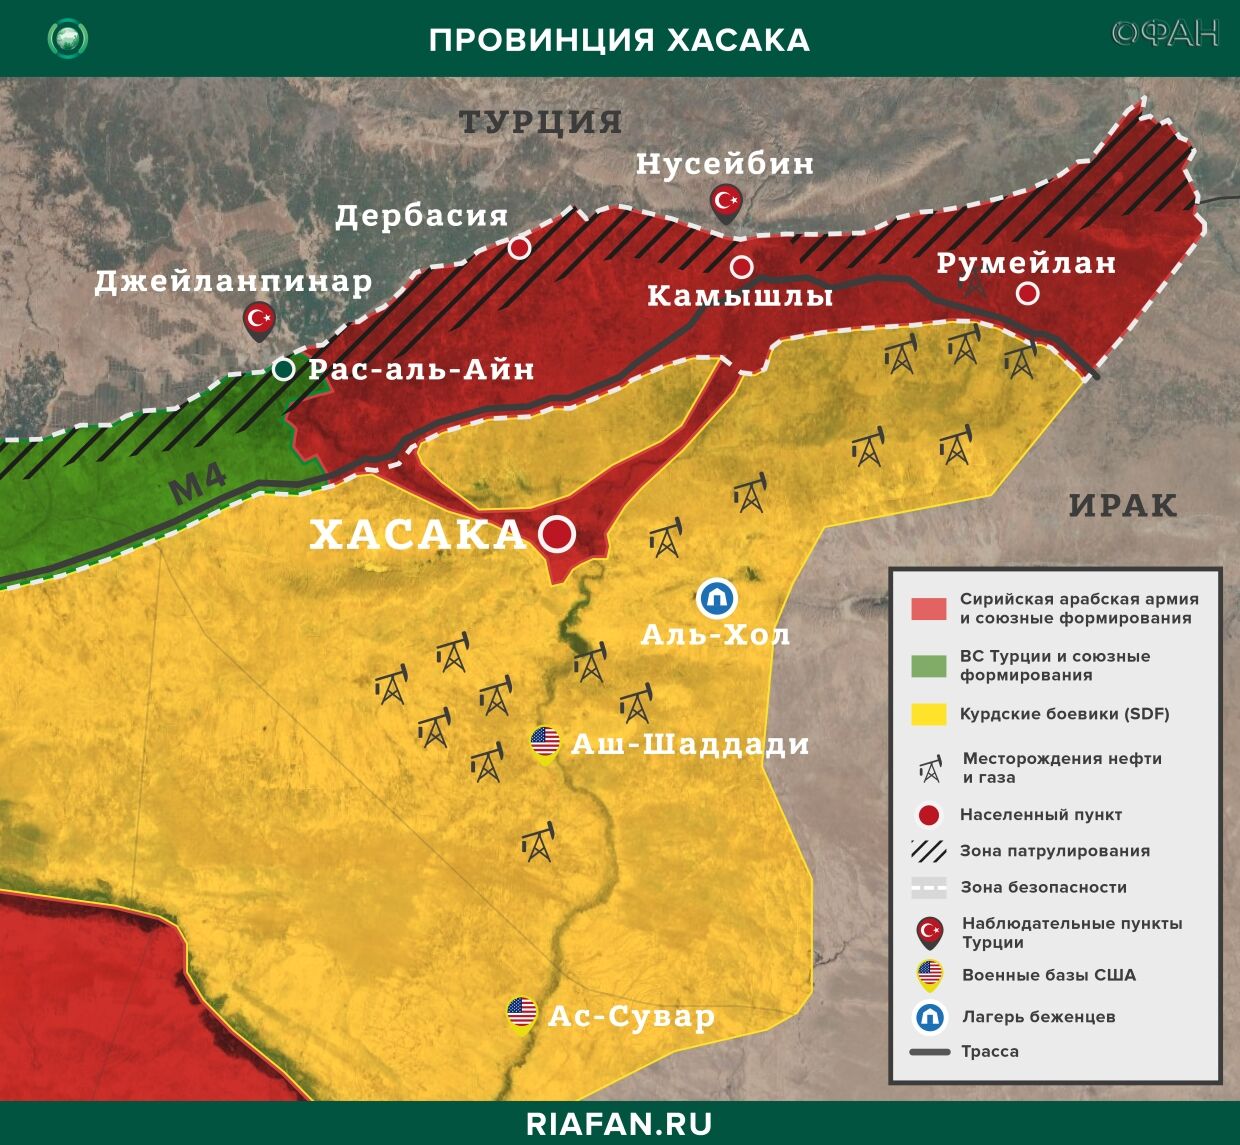 Nouvelles de Syrie 21 Mars 07.00: курдских боевиков обвиняют в освобождении террористов ИГ, 4 члена SDF погибли в Дейр-эз-Зоре